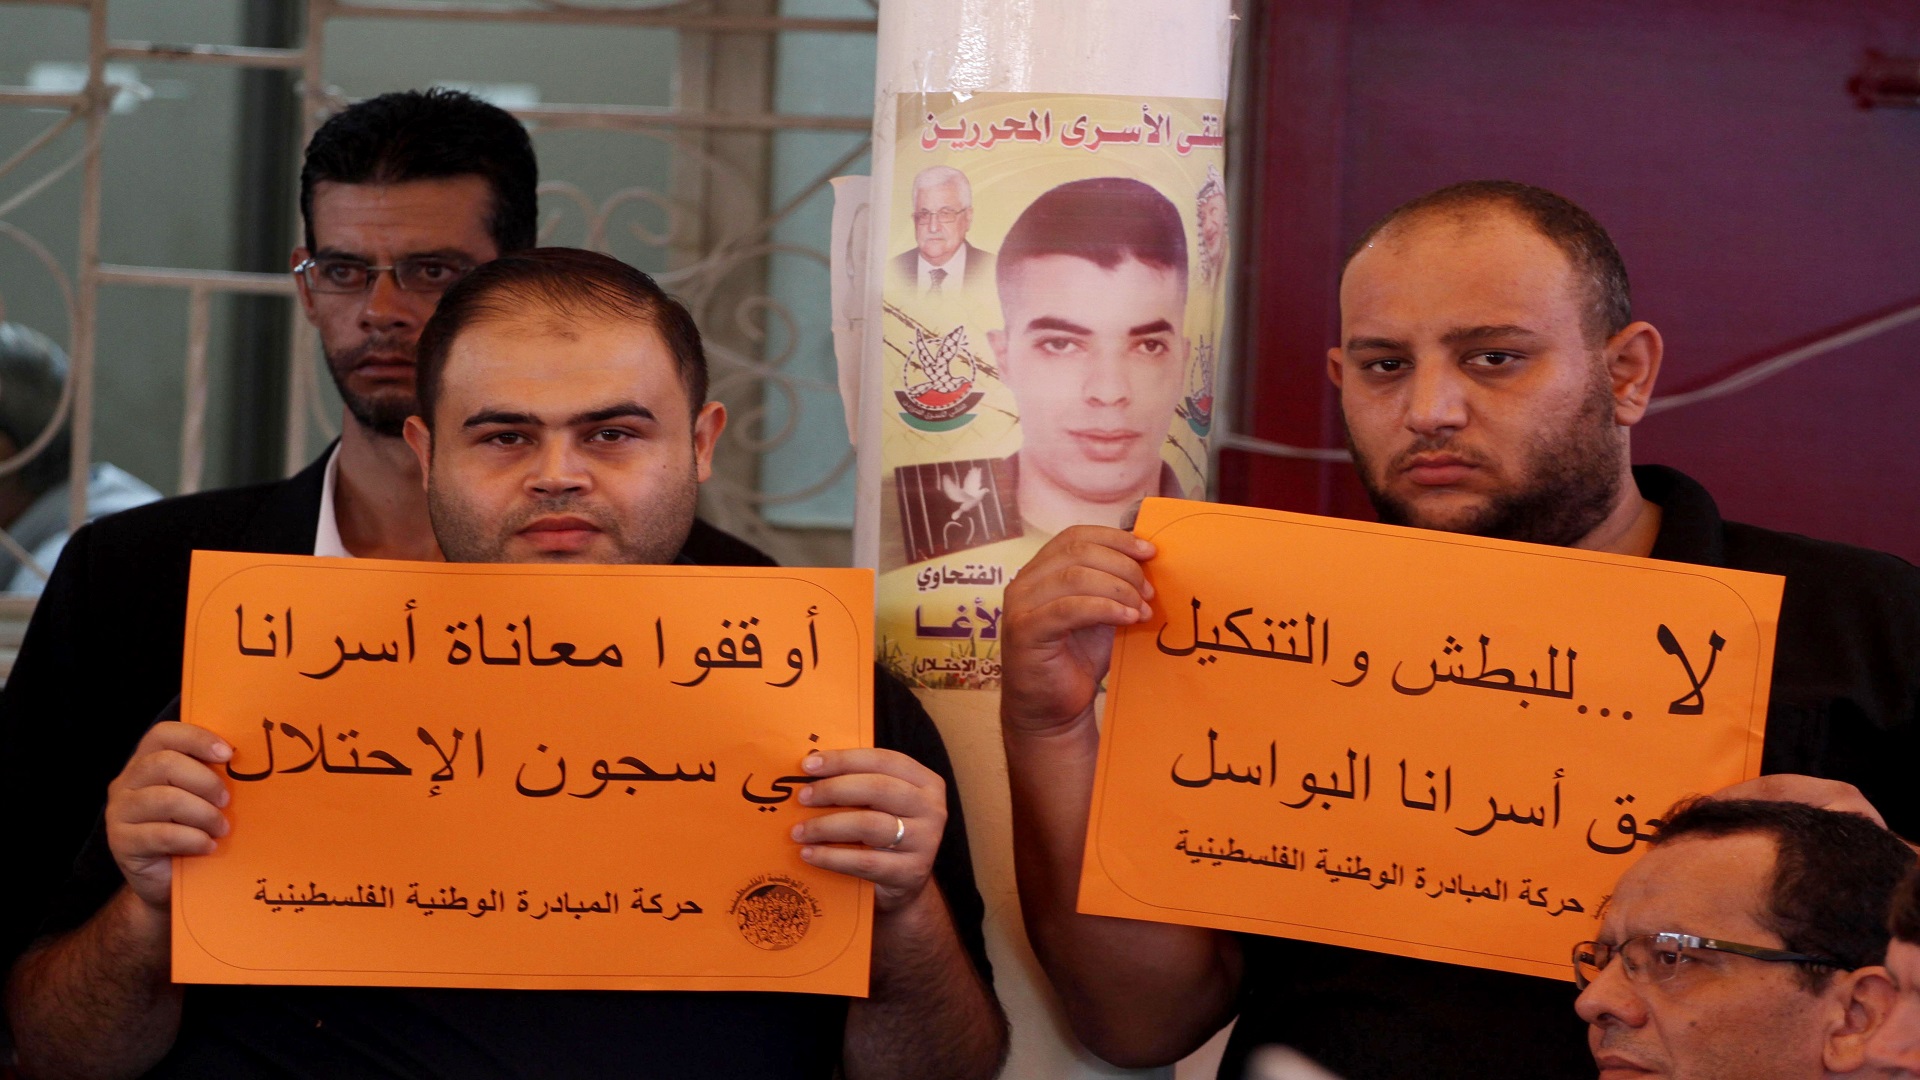 يطالبان بحياة كريمة للمعتقلين (محمد أسد/ الأناضول)